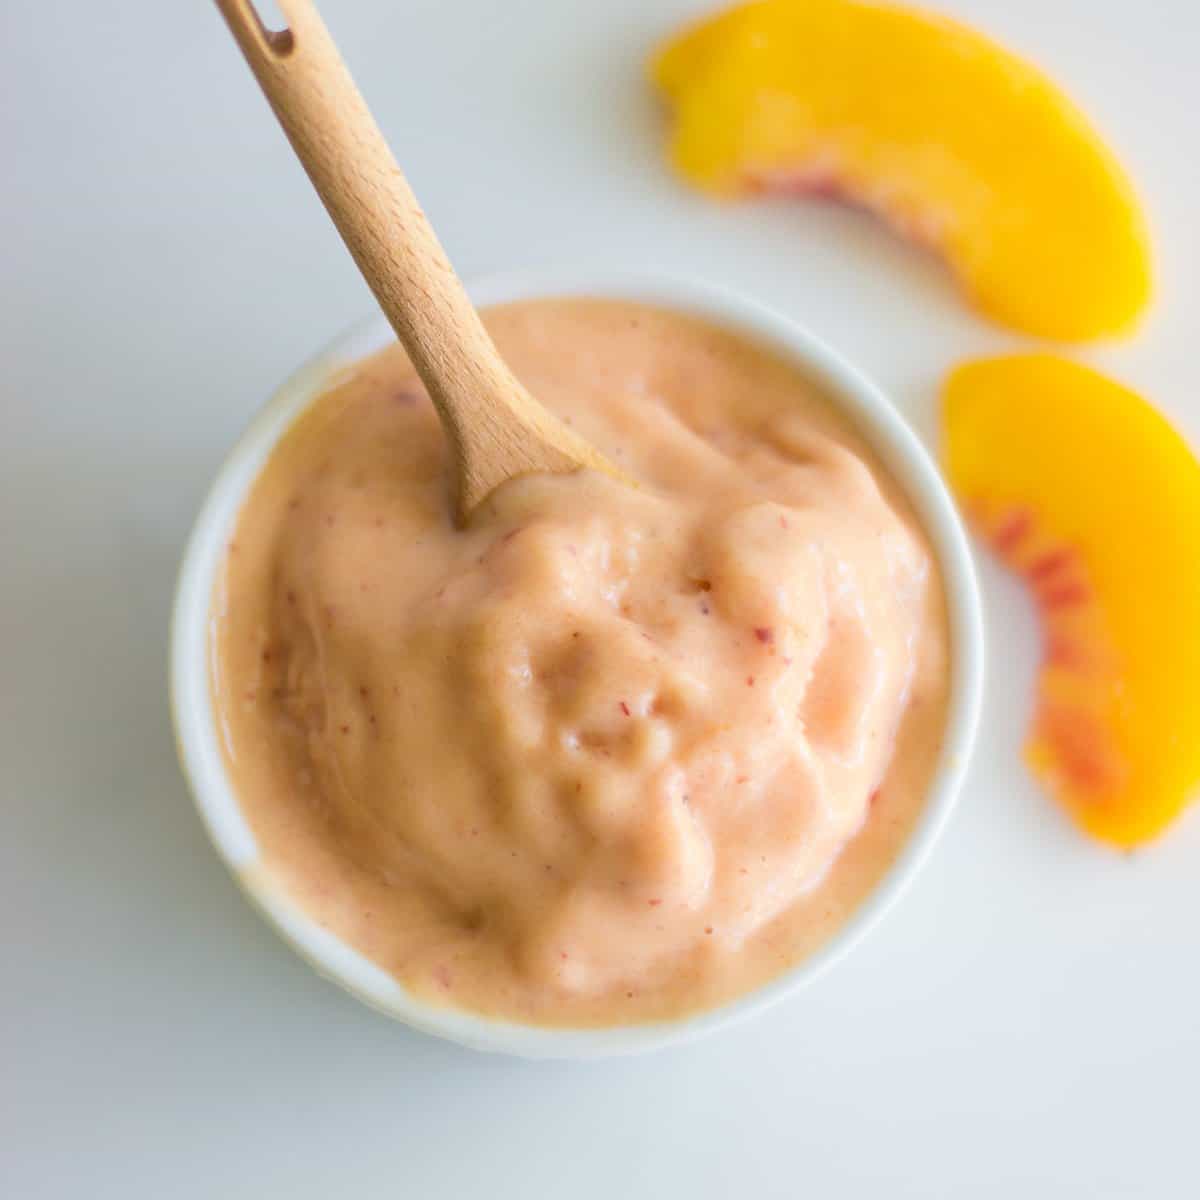 Peach yogurt for baby